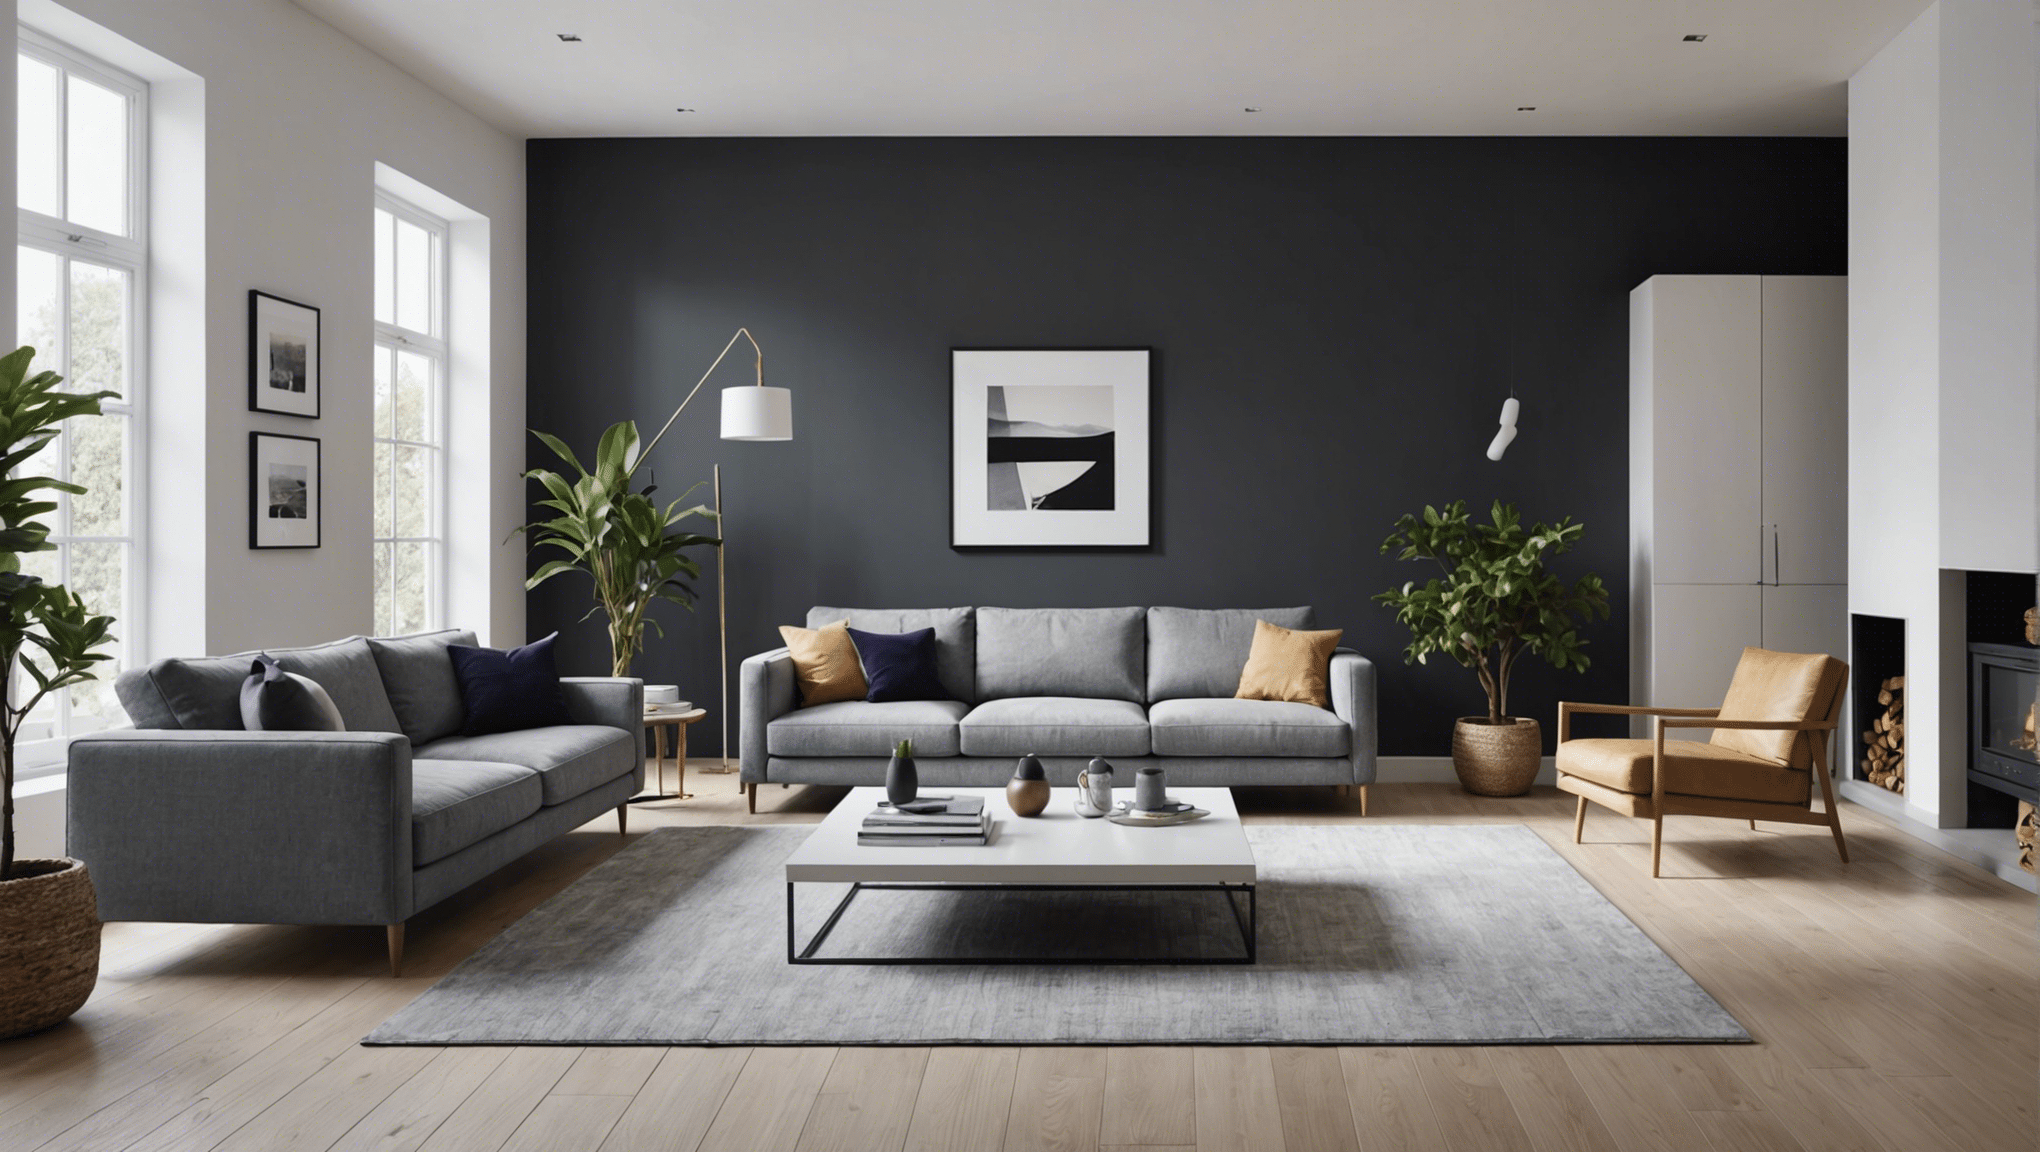 découvrez comment créer un intérieur minimaliste et confortable grâce à nos conseils pour transformer votre espace en un oasis de sérénité.